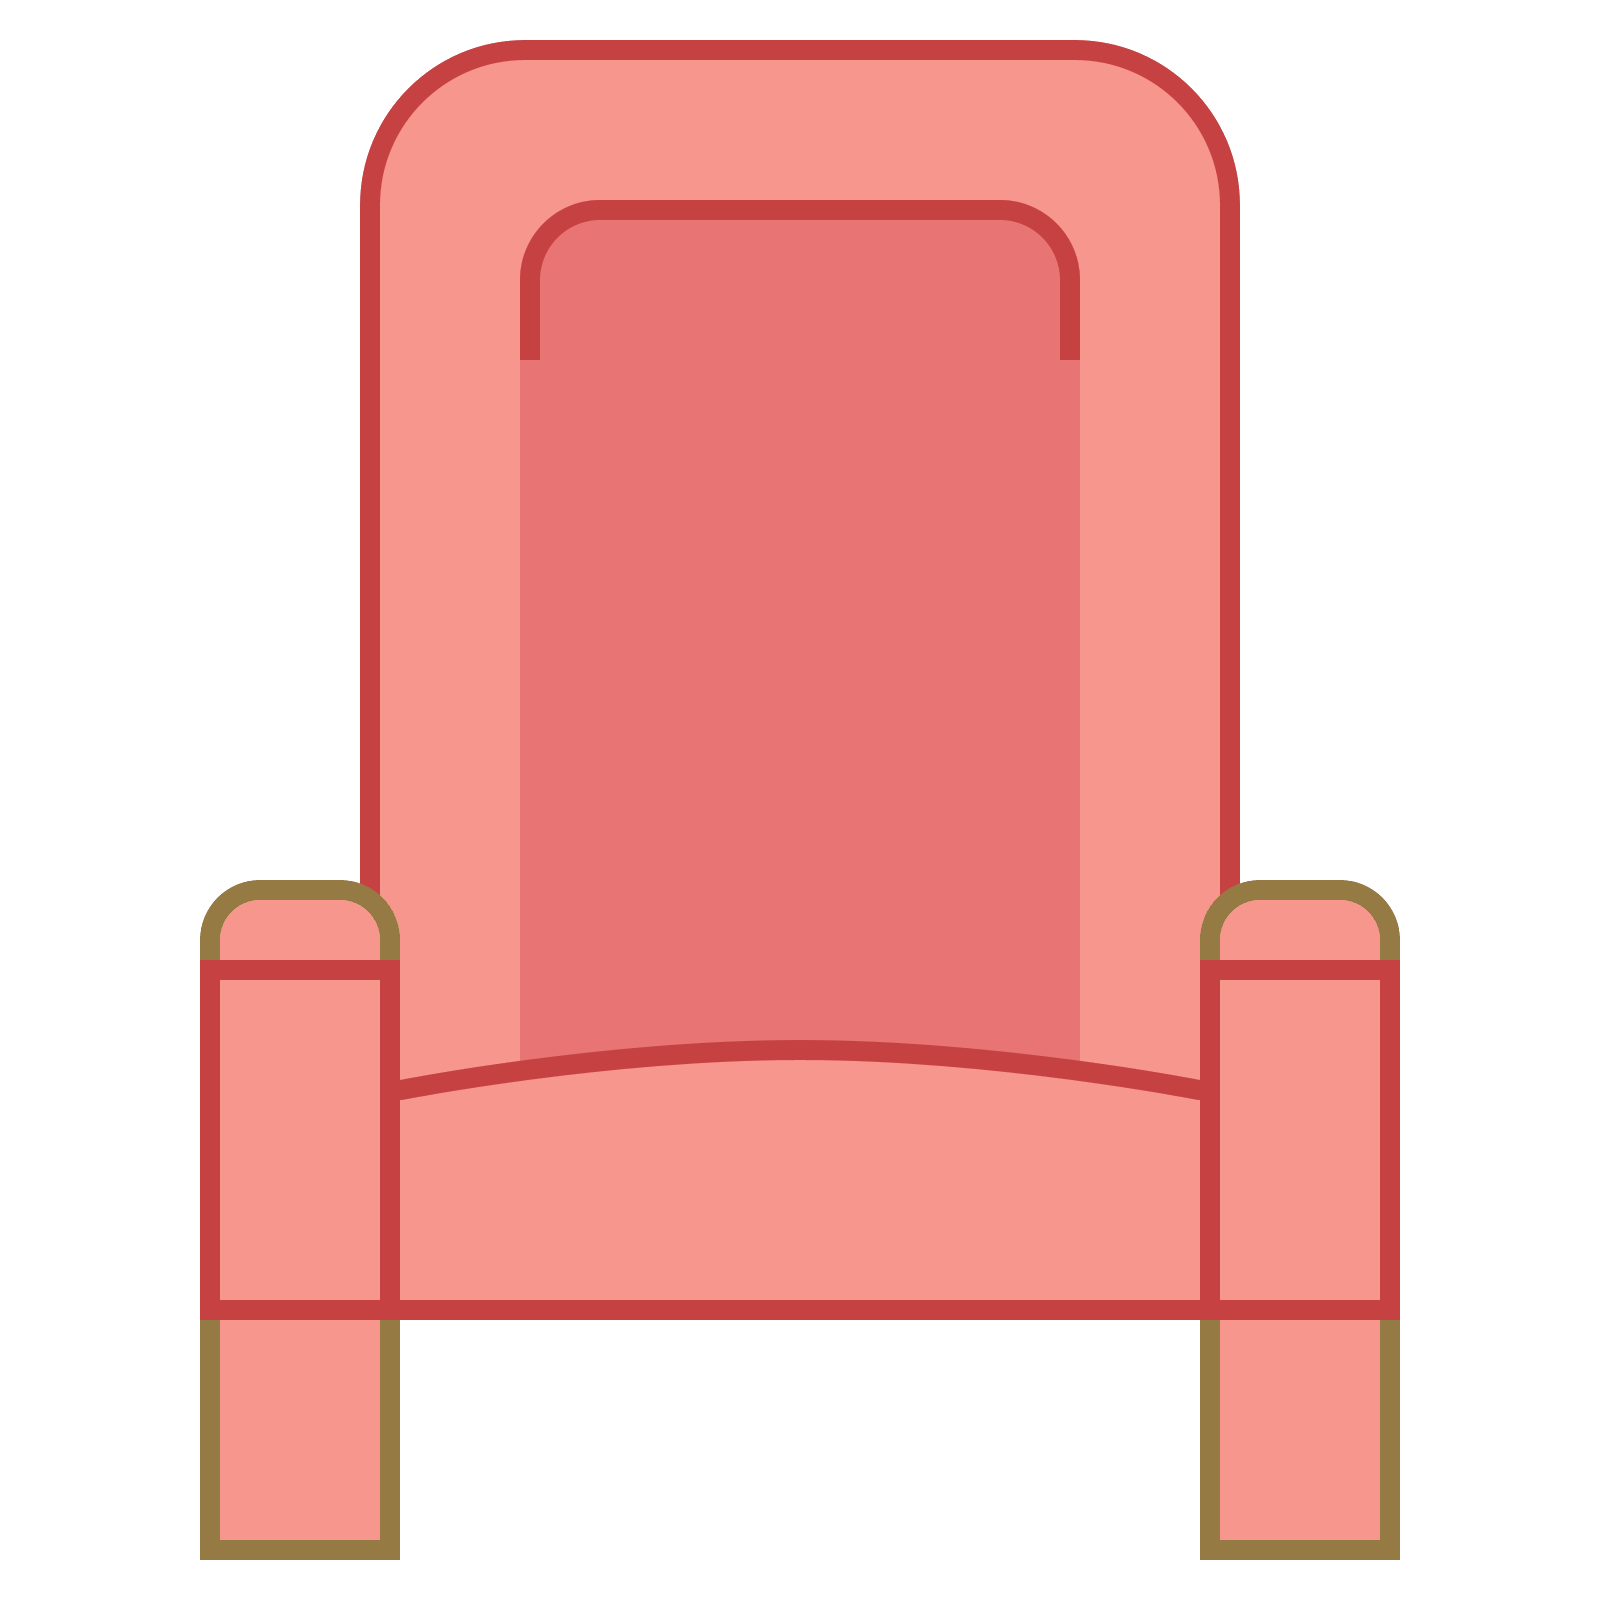 clipart chair row chair